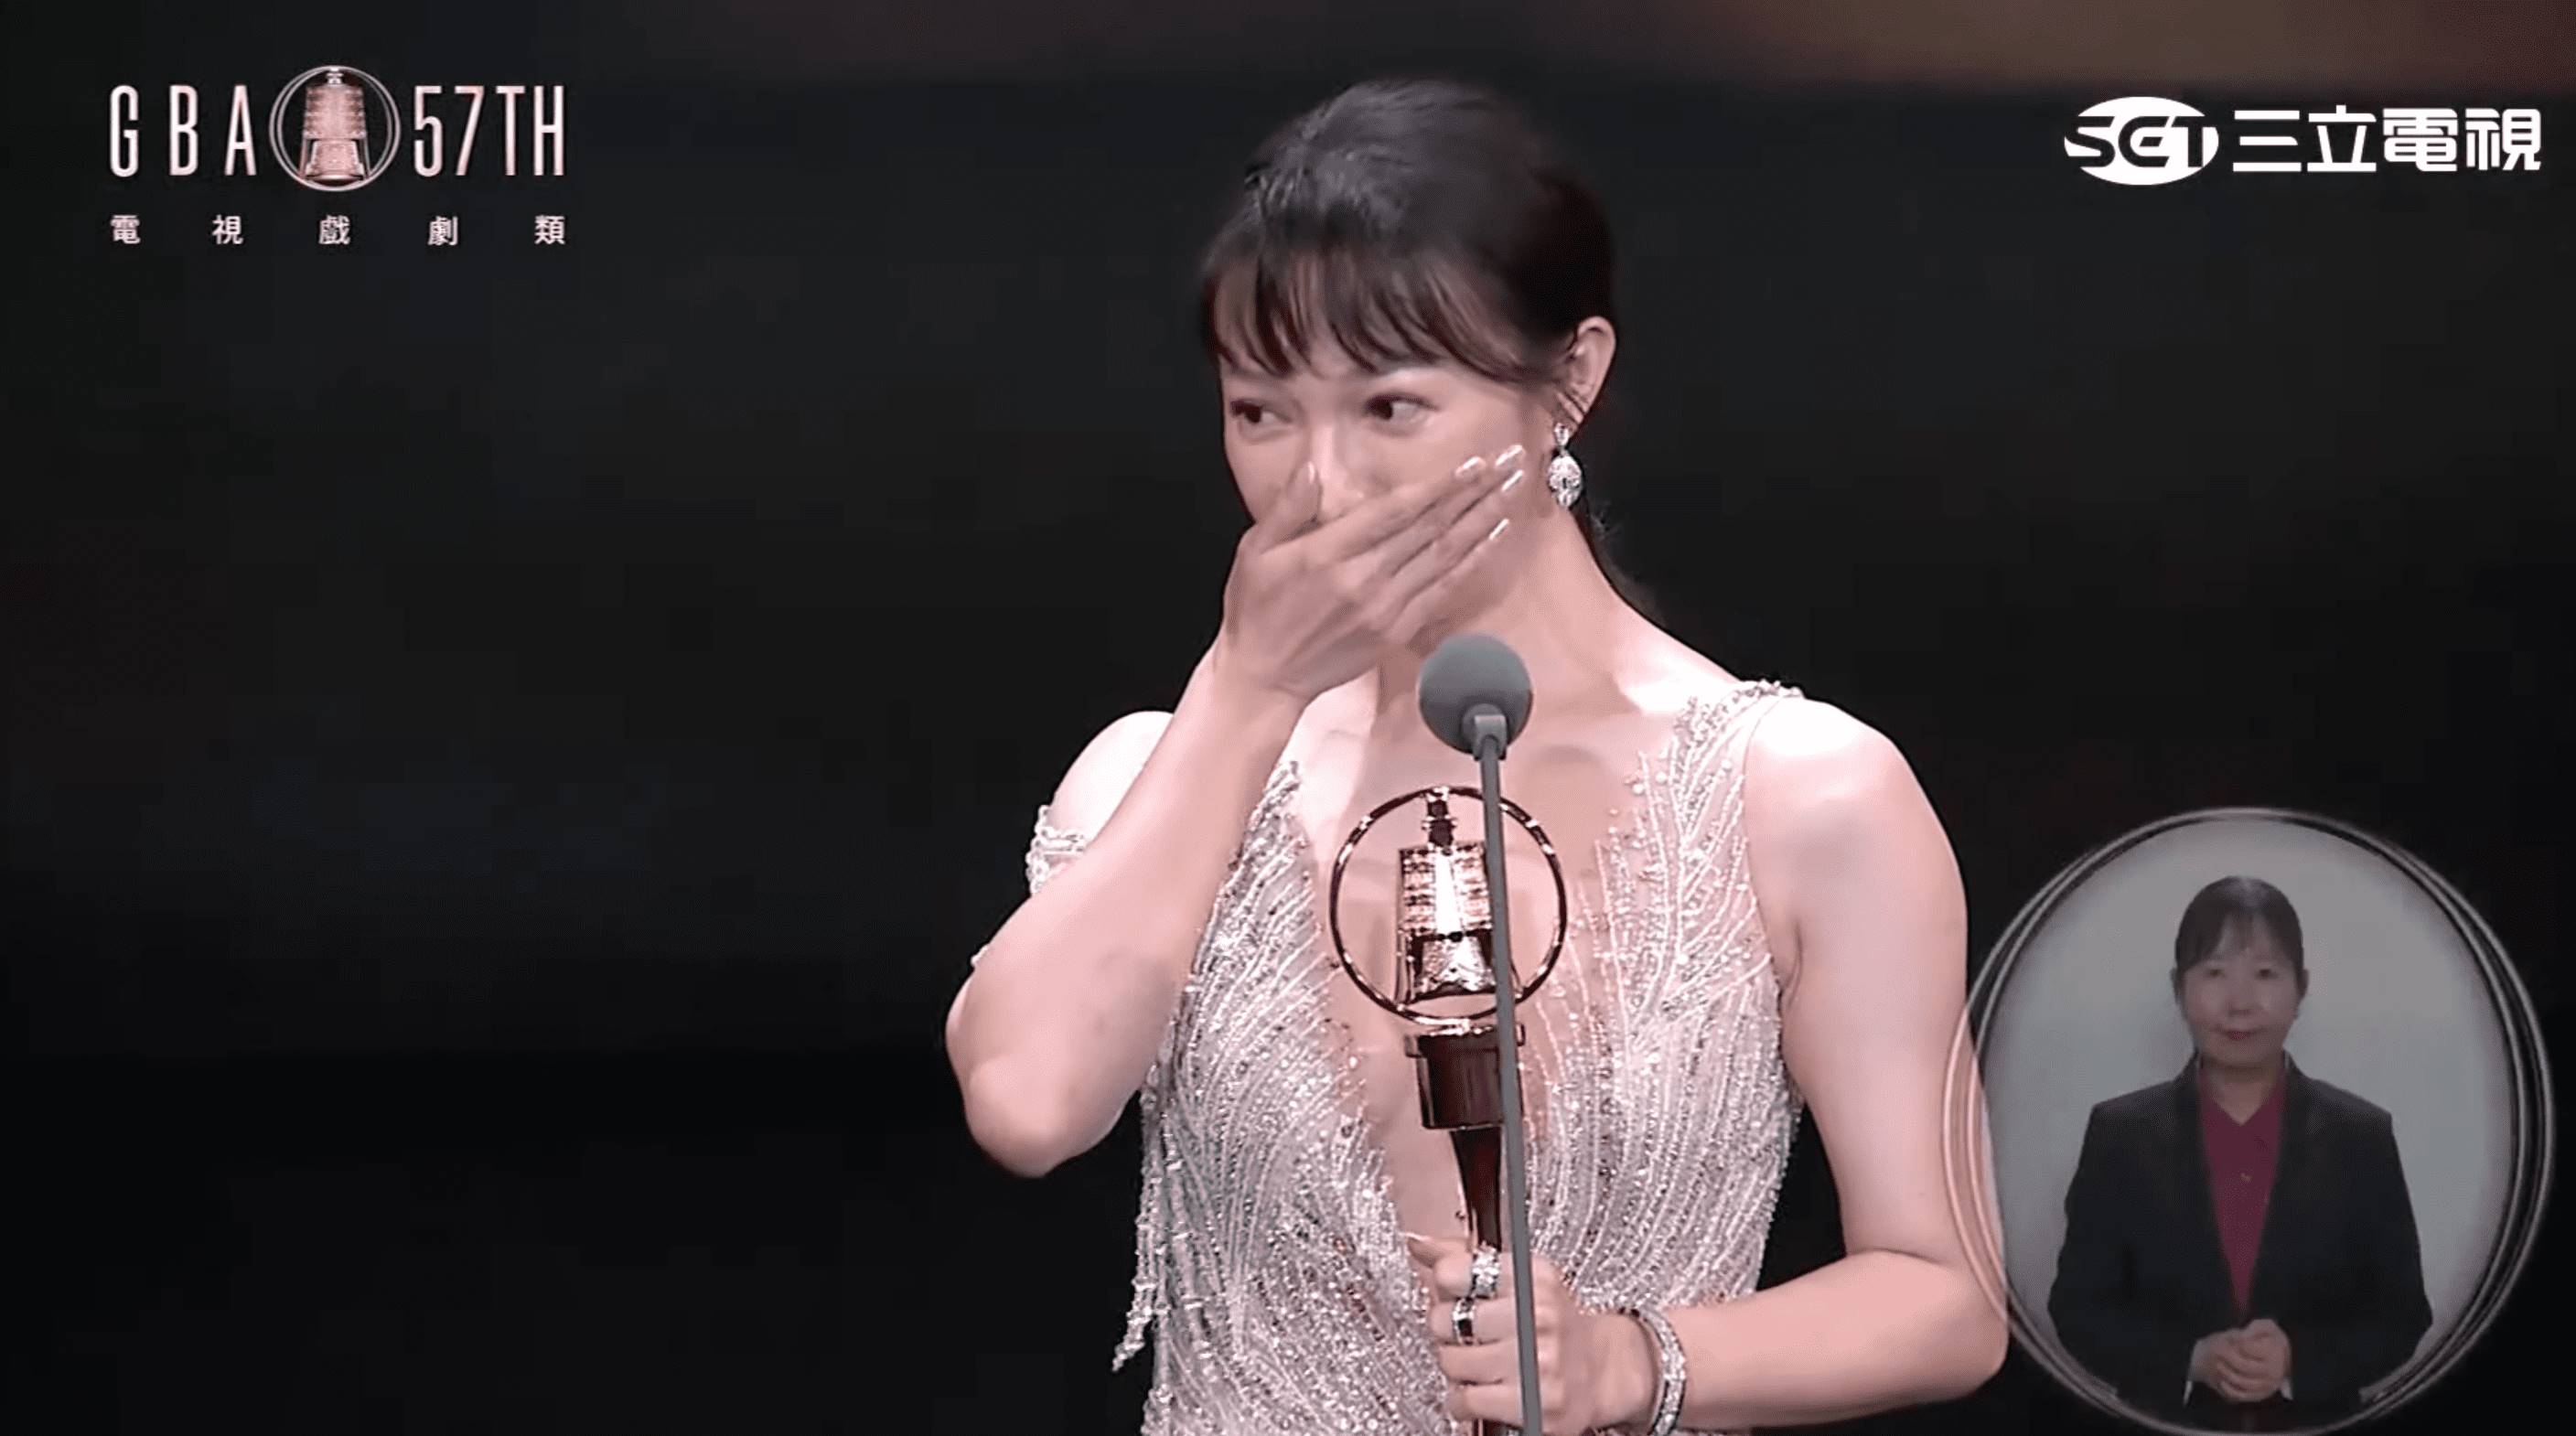 李杏奪第57屆金鐘獎戲劇節目女配角獎